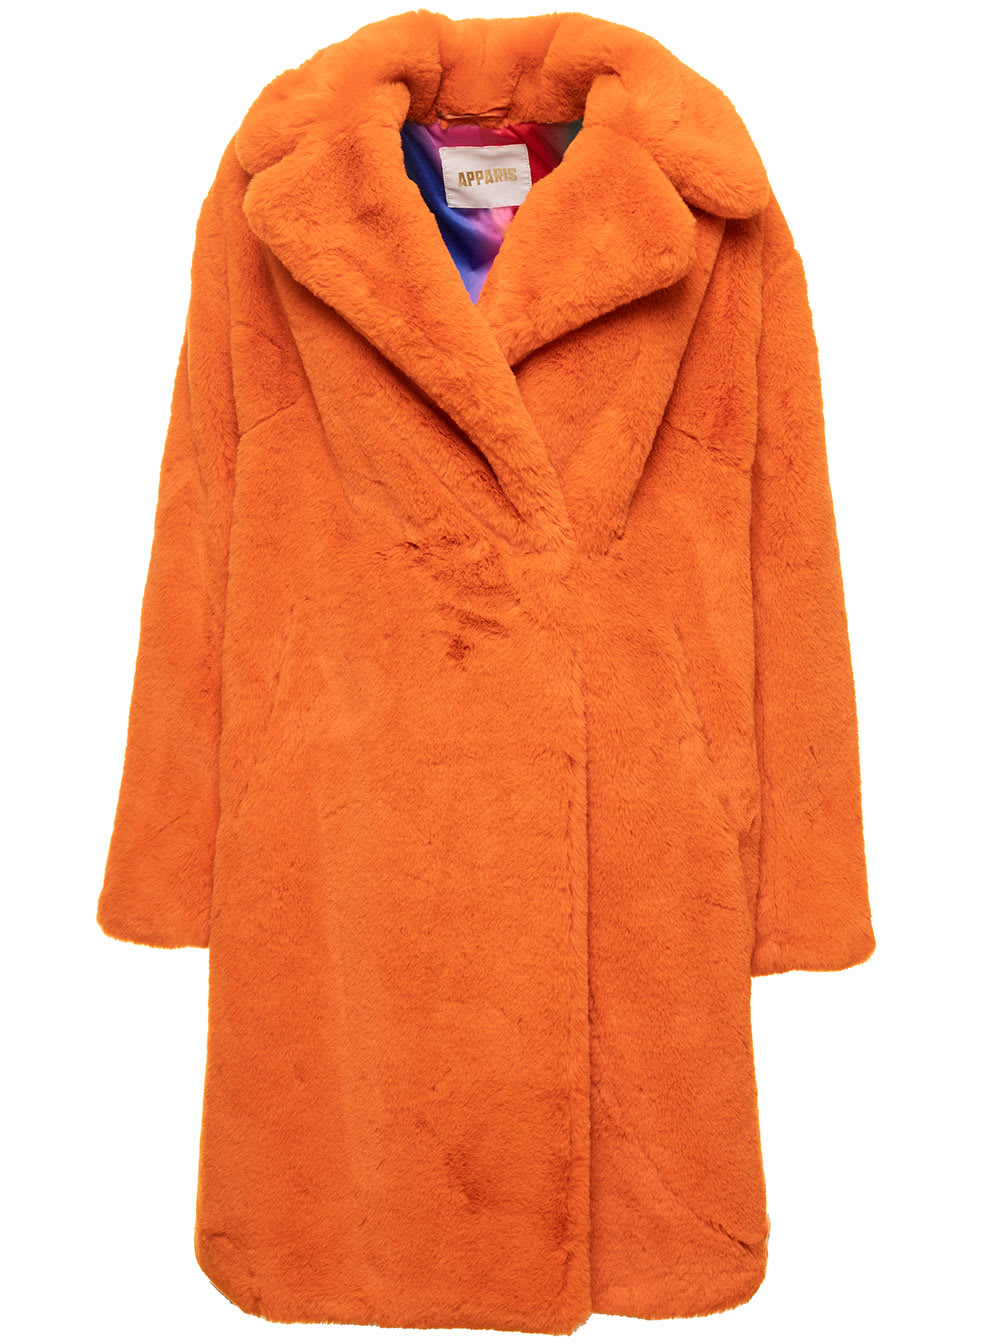 Imani Orange Faux Fur Jacket Woman Apparis